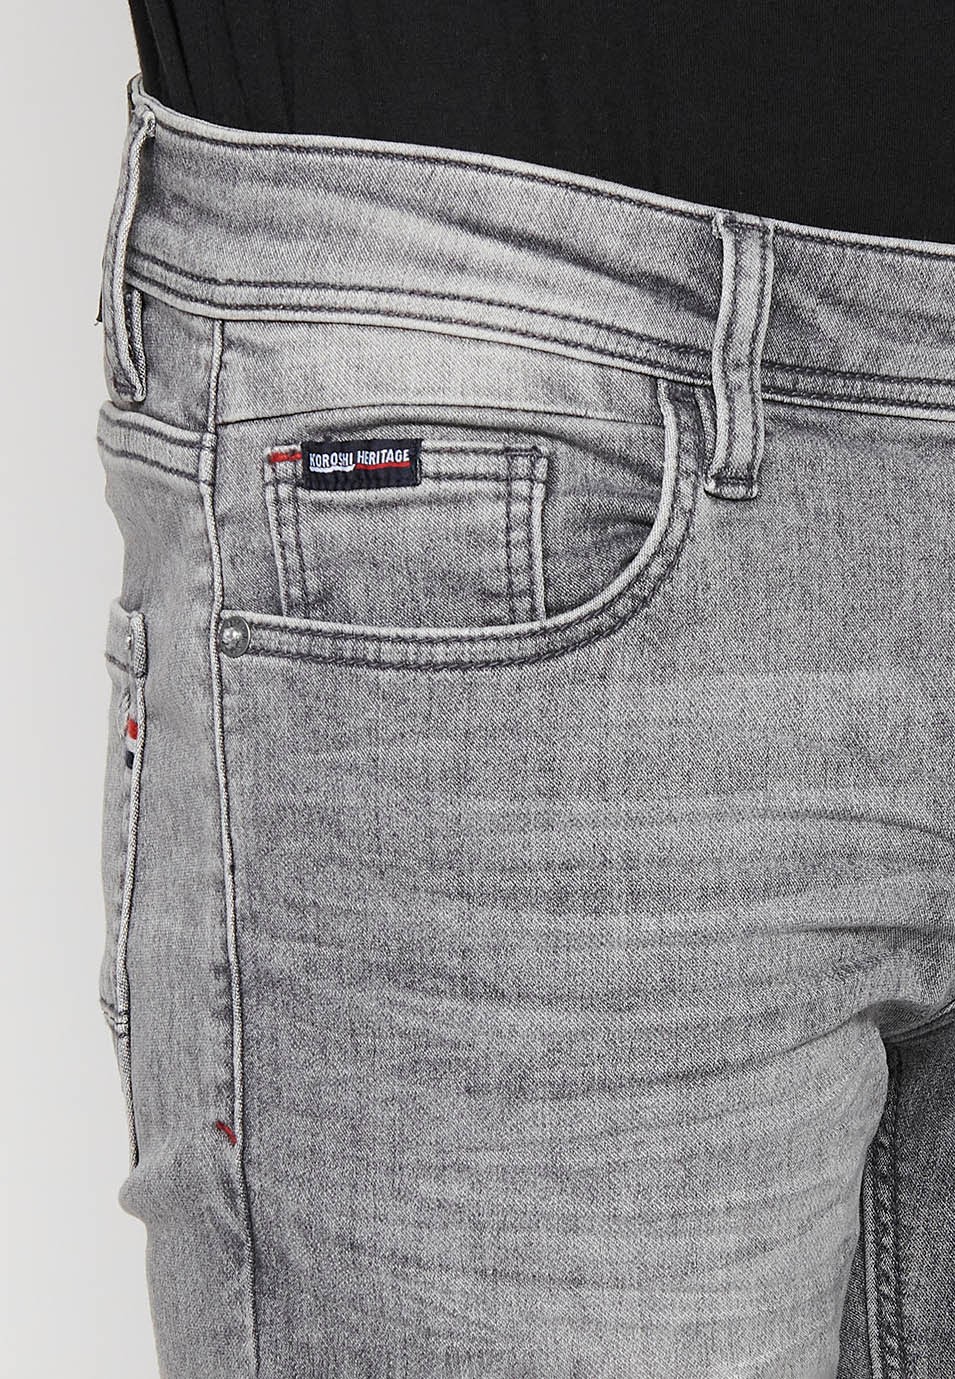 Pantalons llargs Jeans denim slim fit amb Cinc butxaques, un cereller de Color Denim Gris per a Home